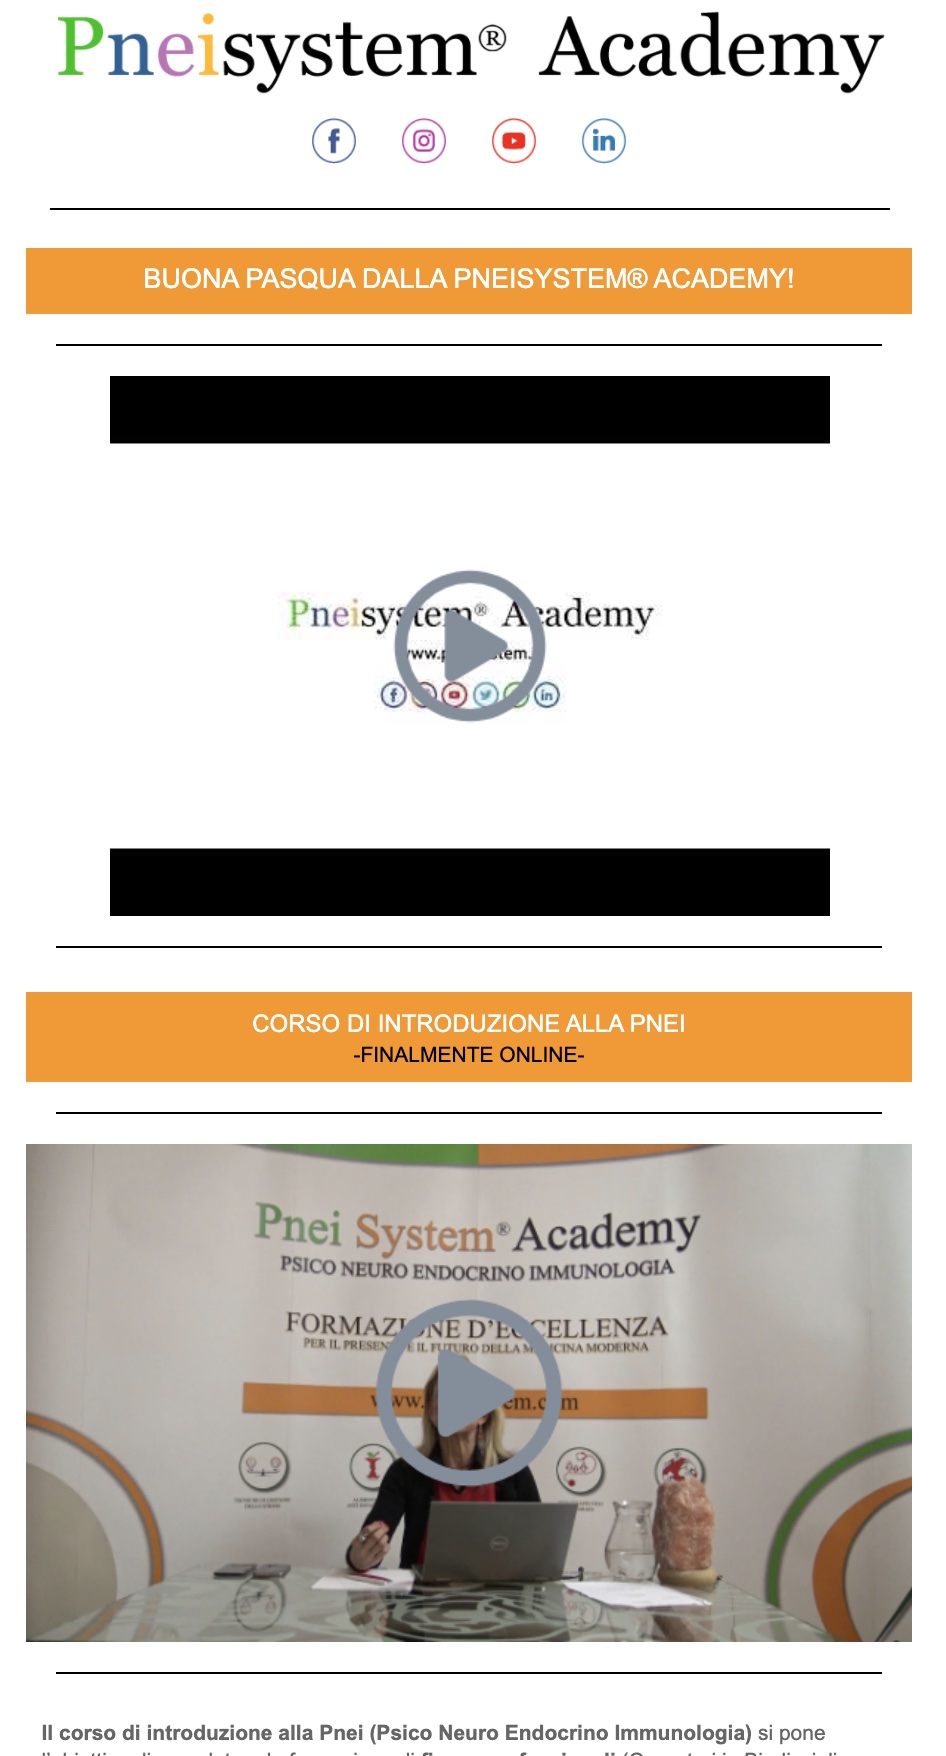 pneisystem academy news